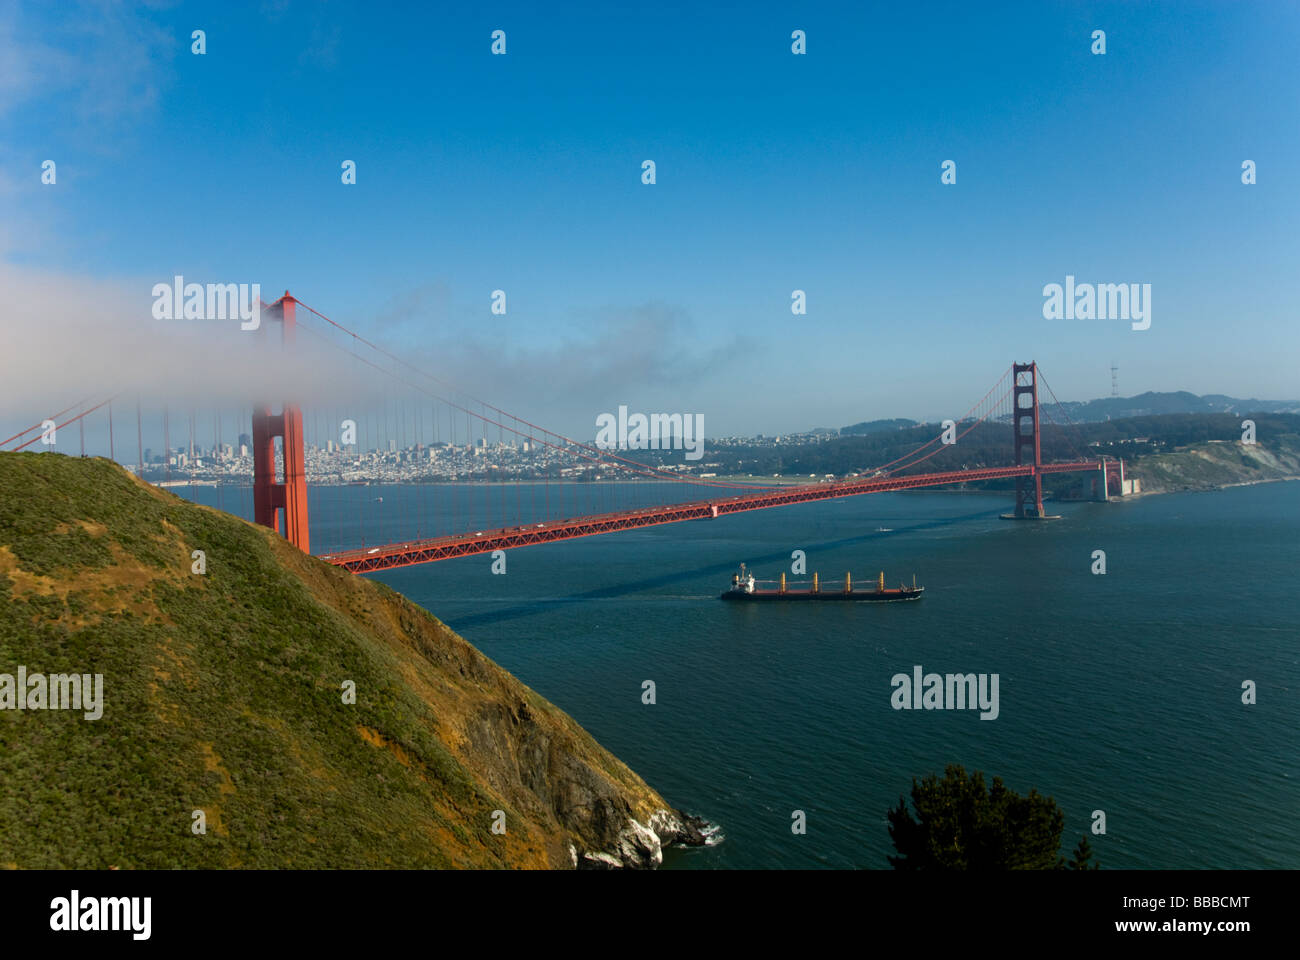 Conteneurs de la Californie en passant sous le Golden Gate Bridge ; vue sur le Golden Gate Bridge et de la ville. Banque D'Images